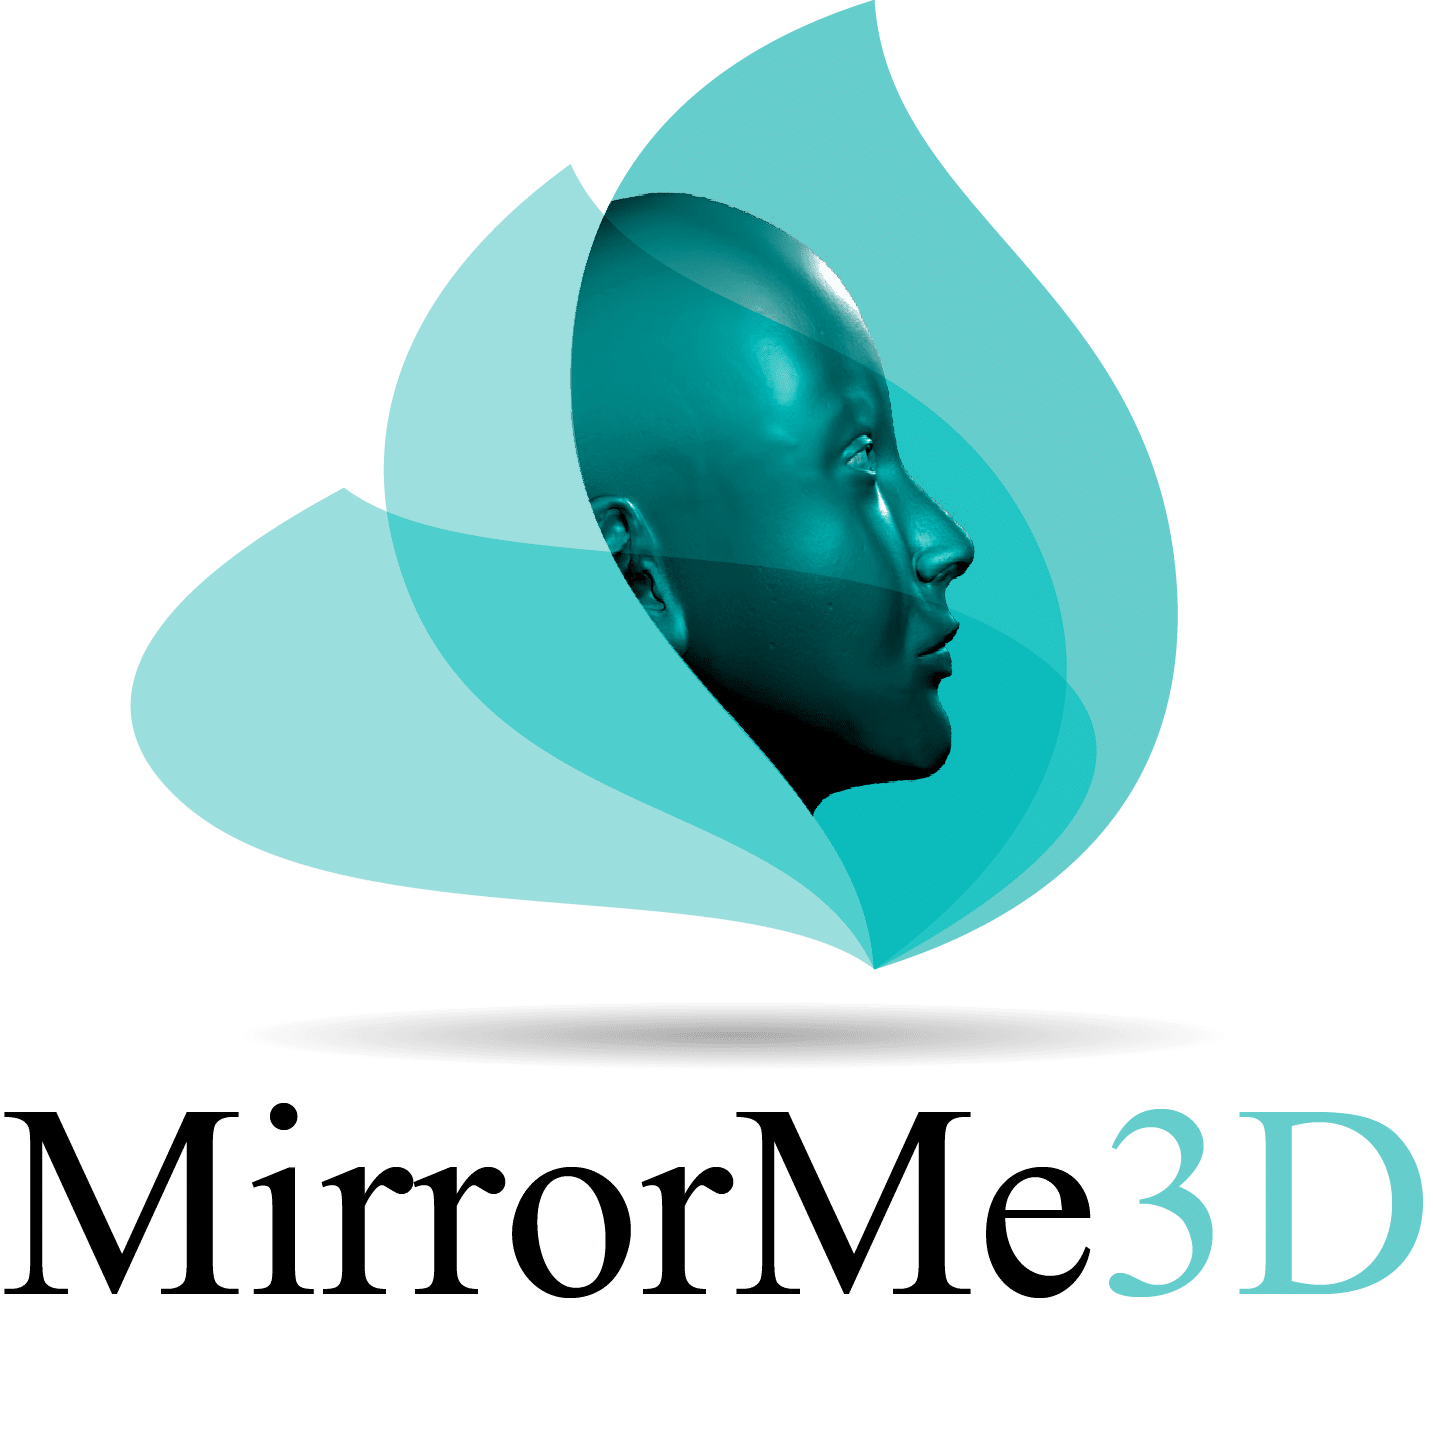 MirrorMe3D logo